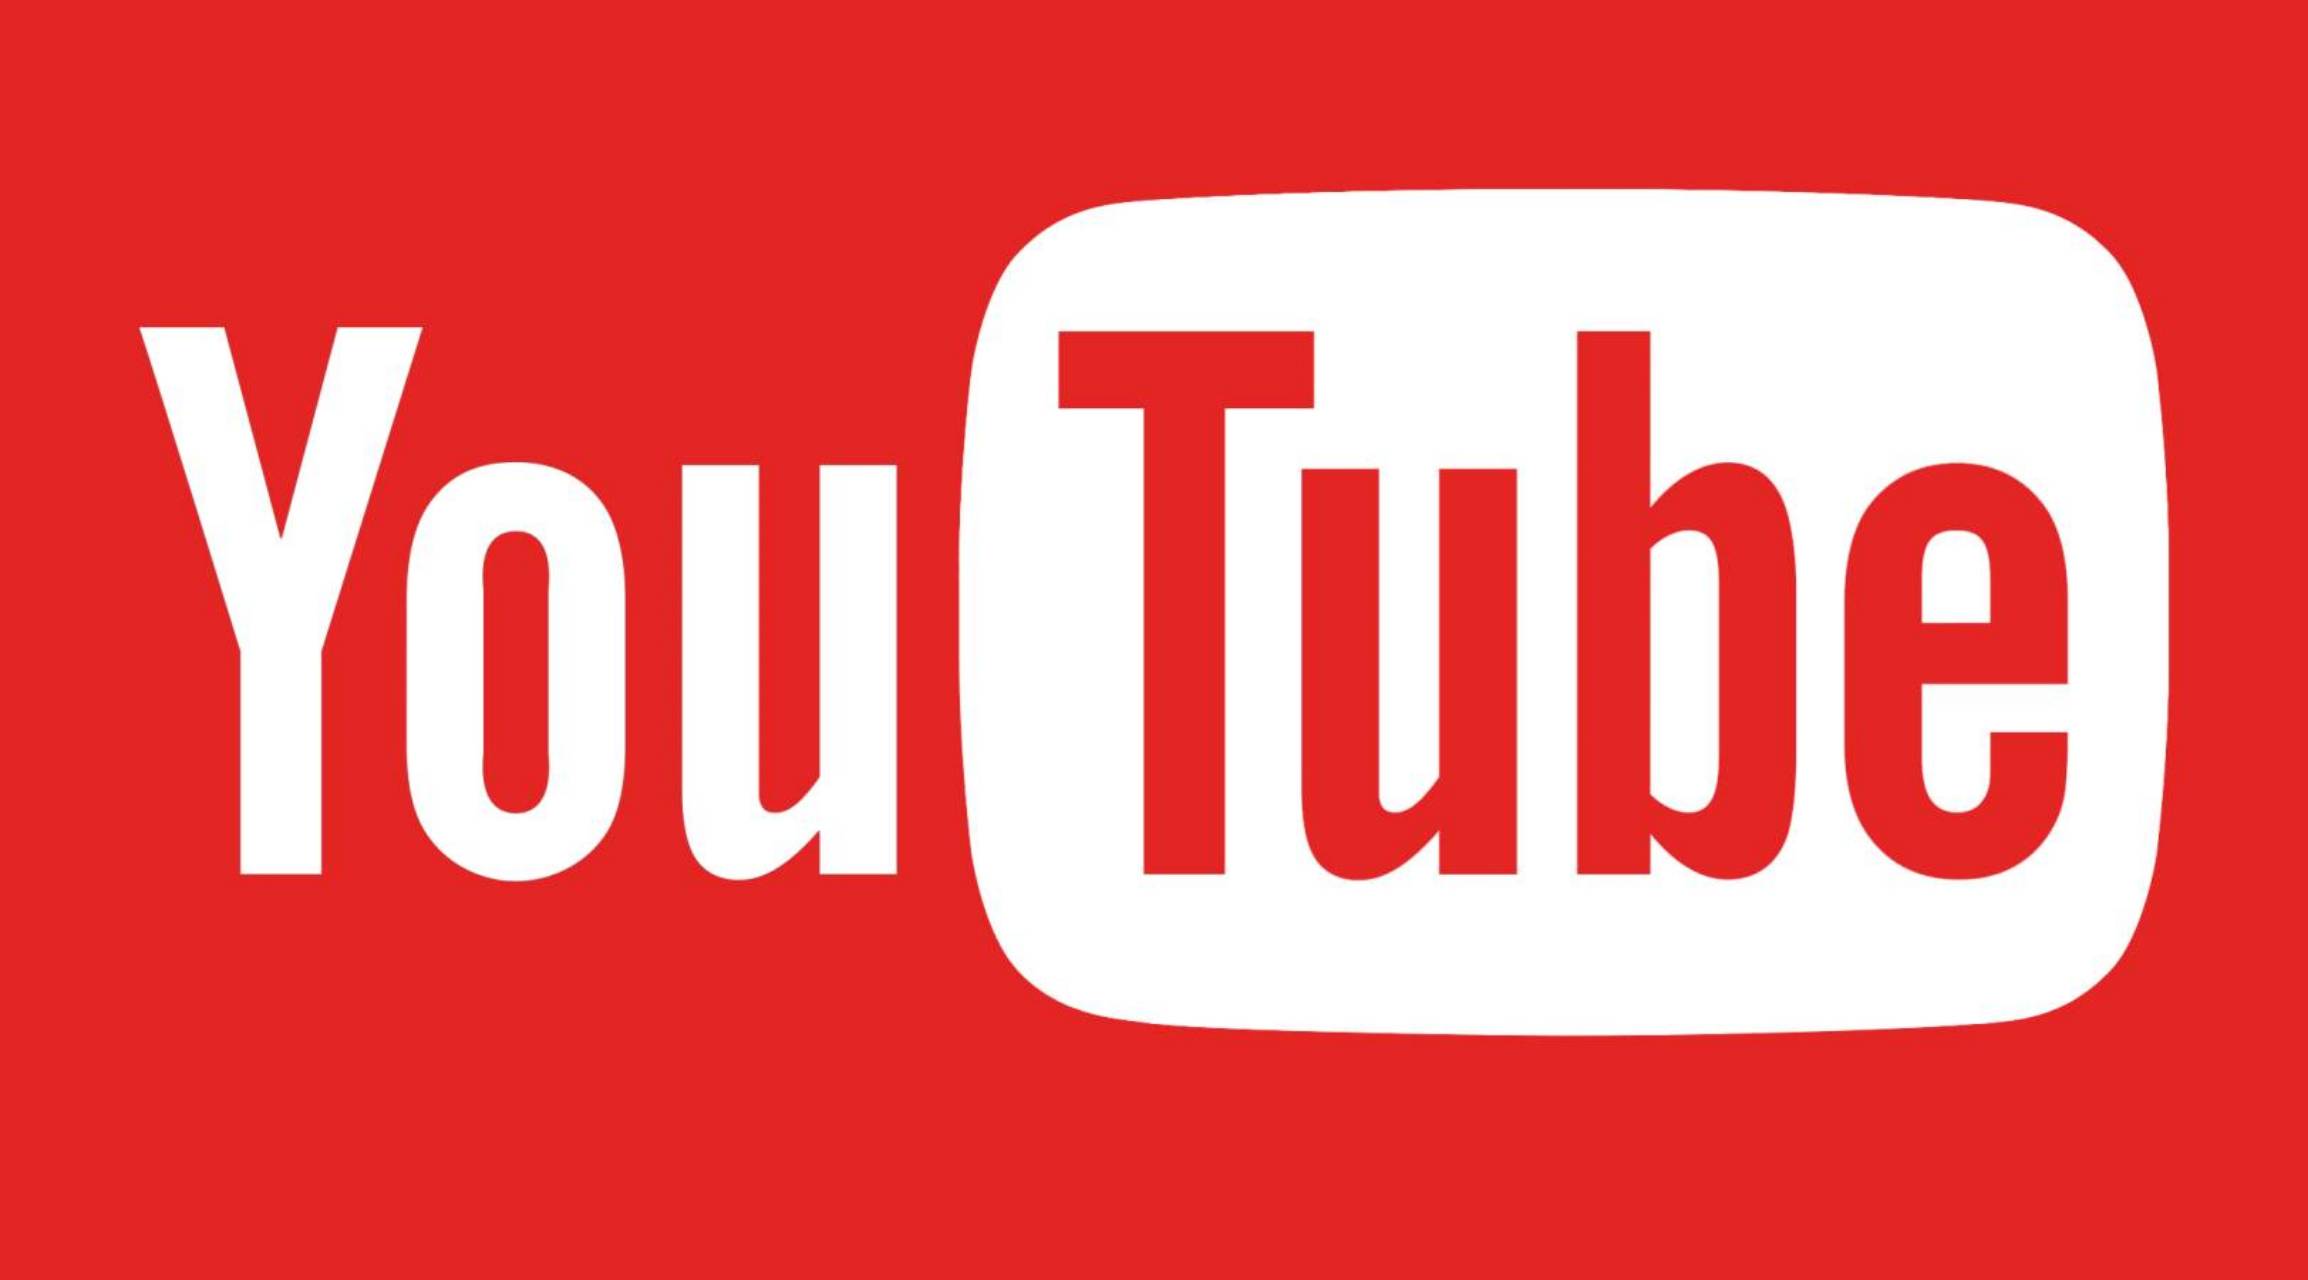 YouTube: Noul Update oferit pentru Aplicatia oferita de Google